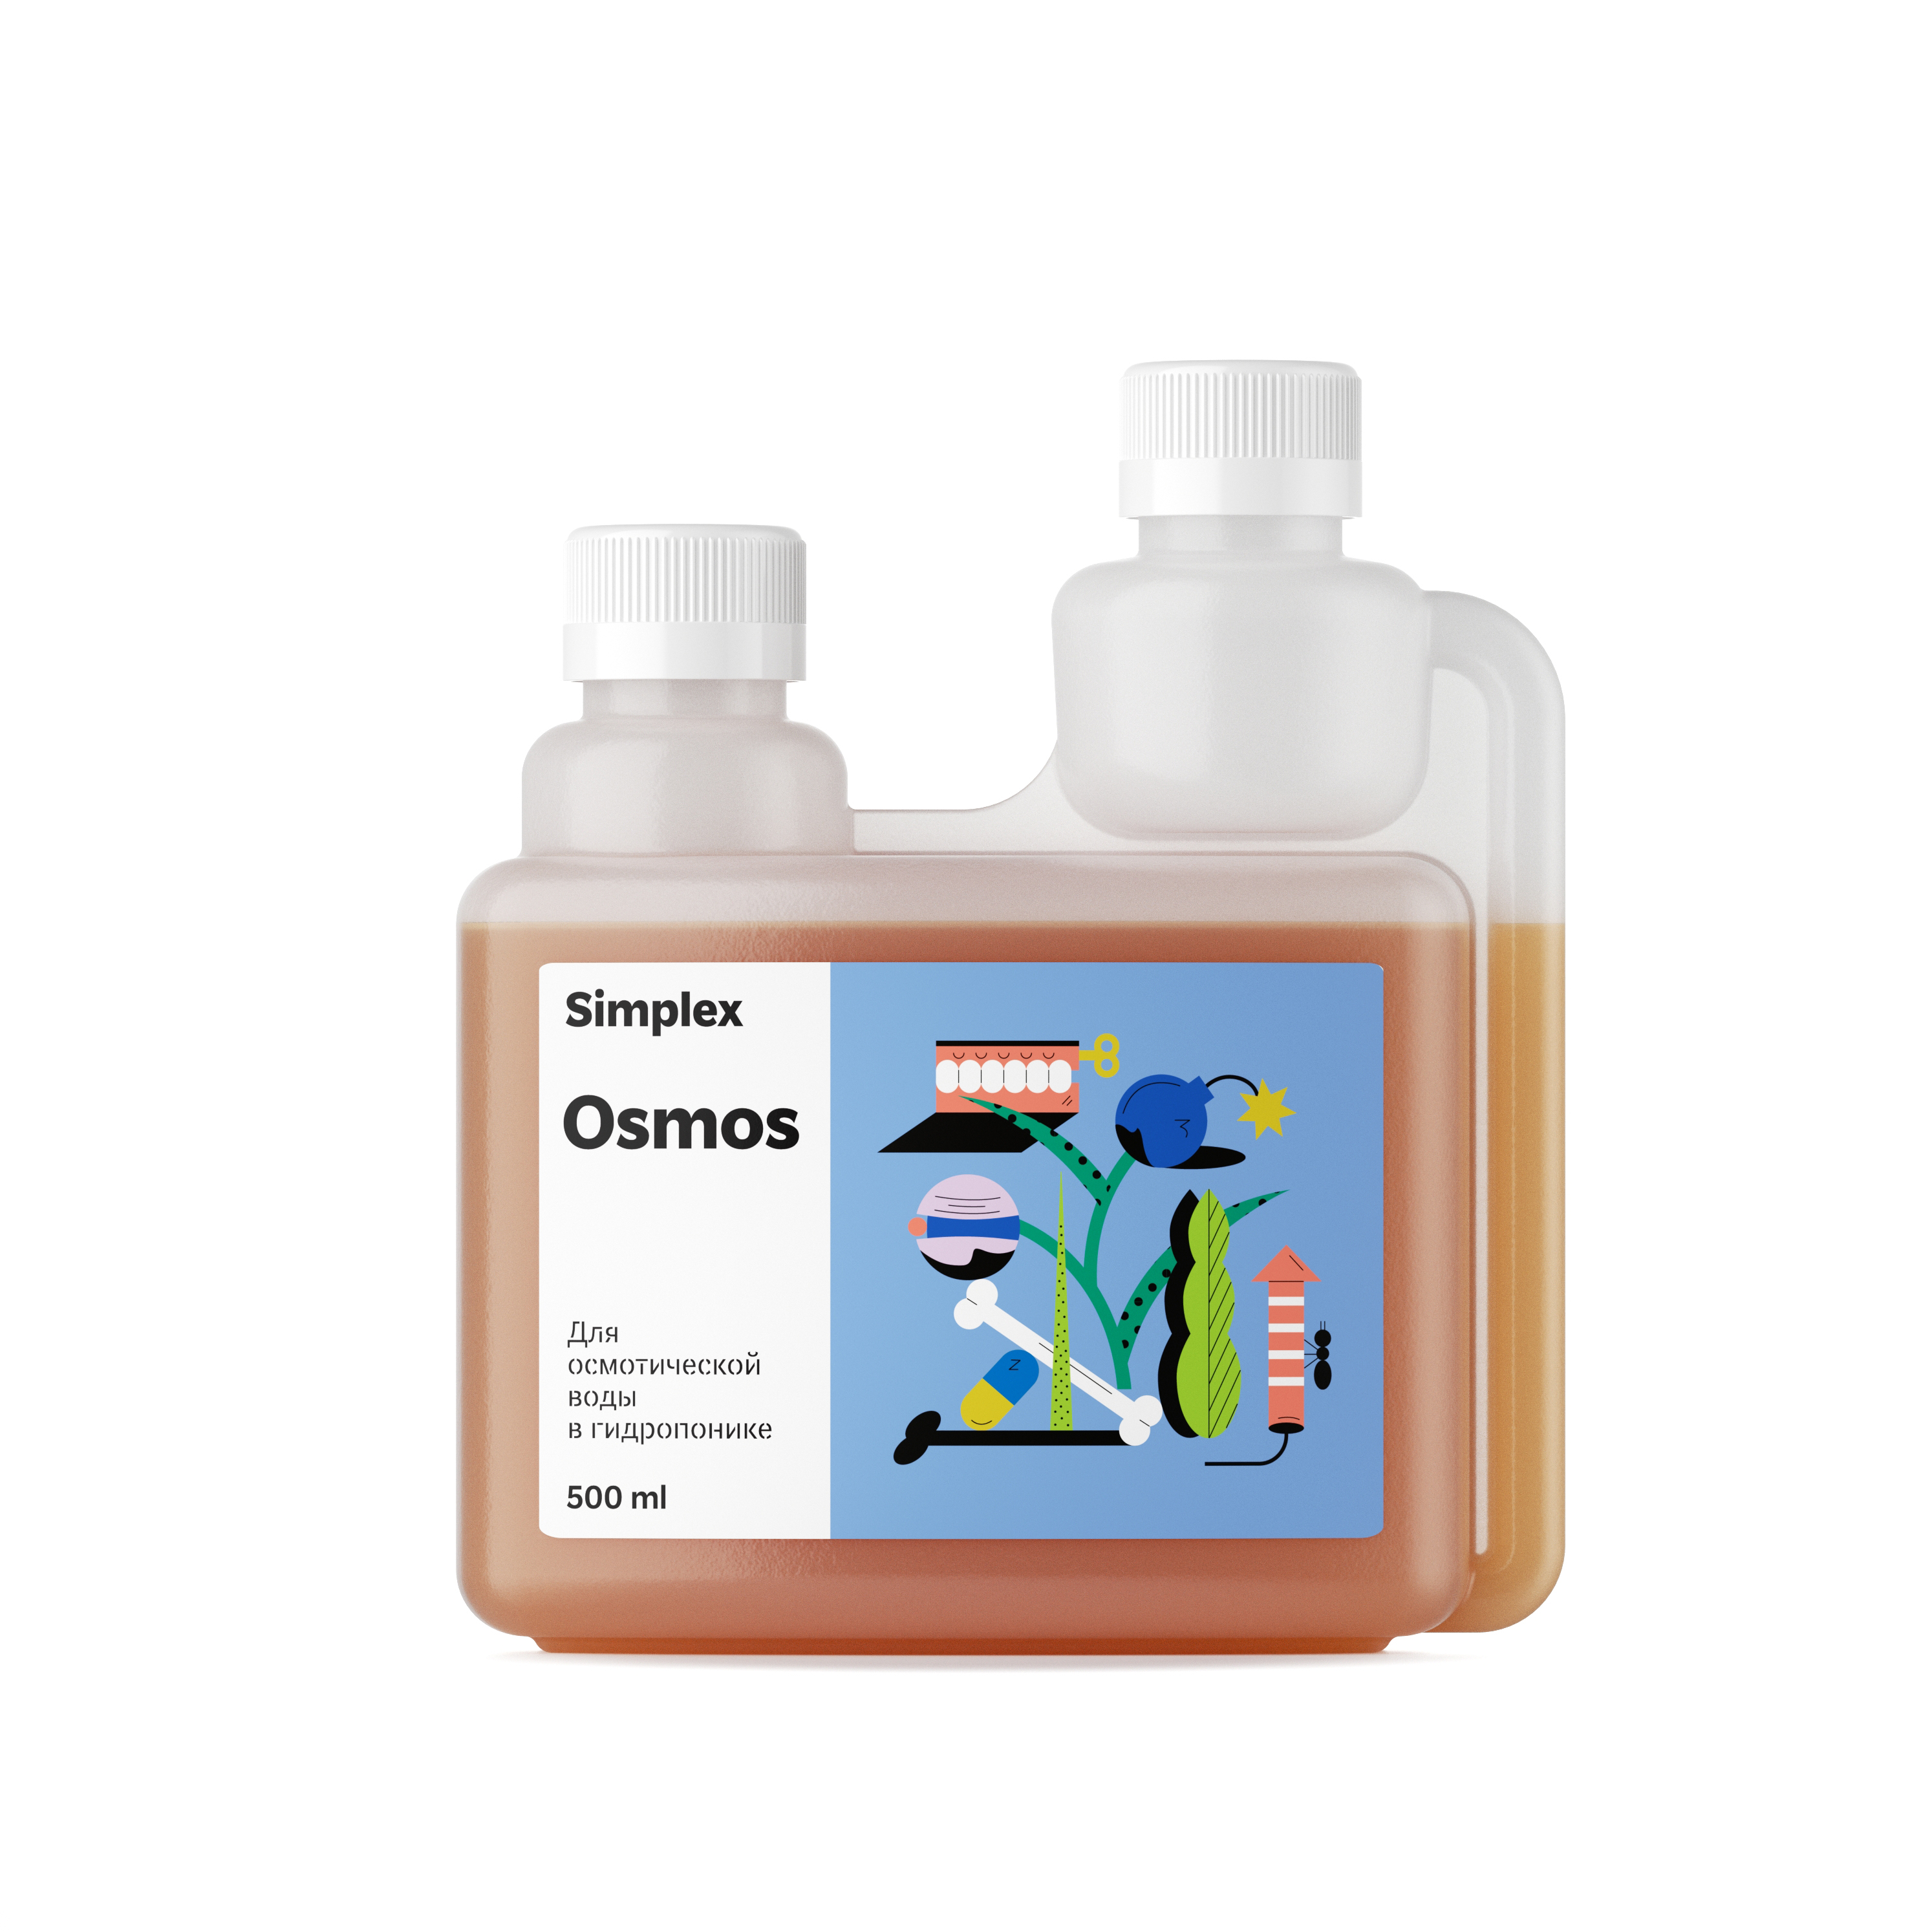 Simplex Osmos 500 мл добавка для воды, очищенной методом обратного осмоса 500 мл